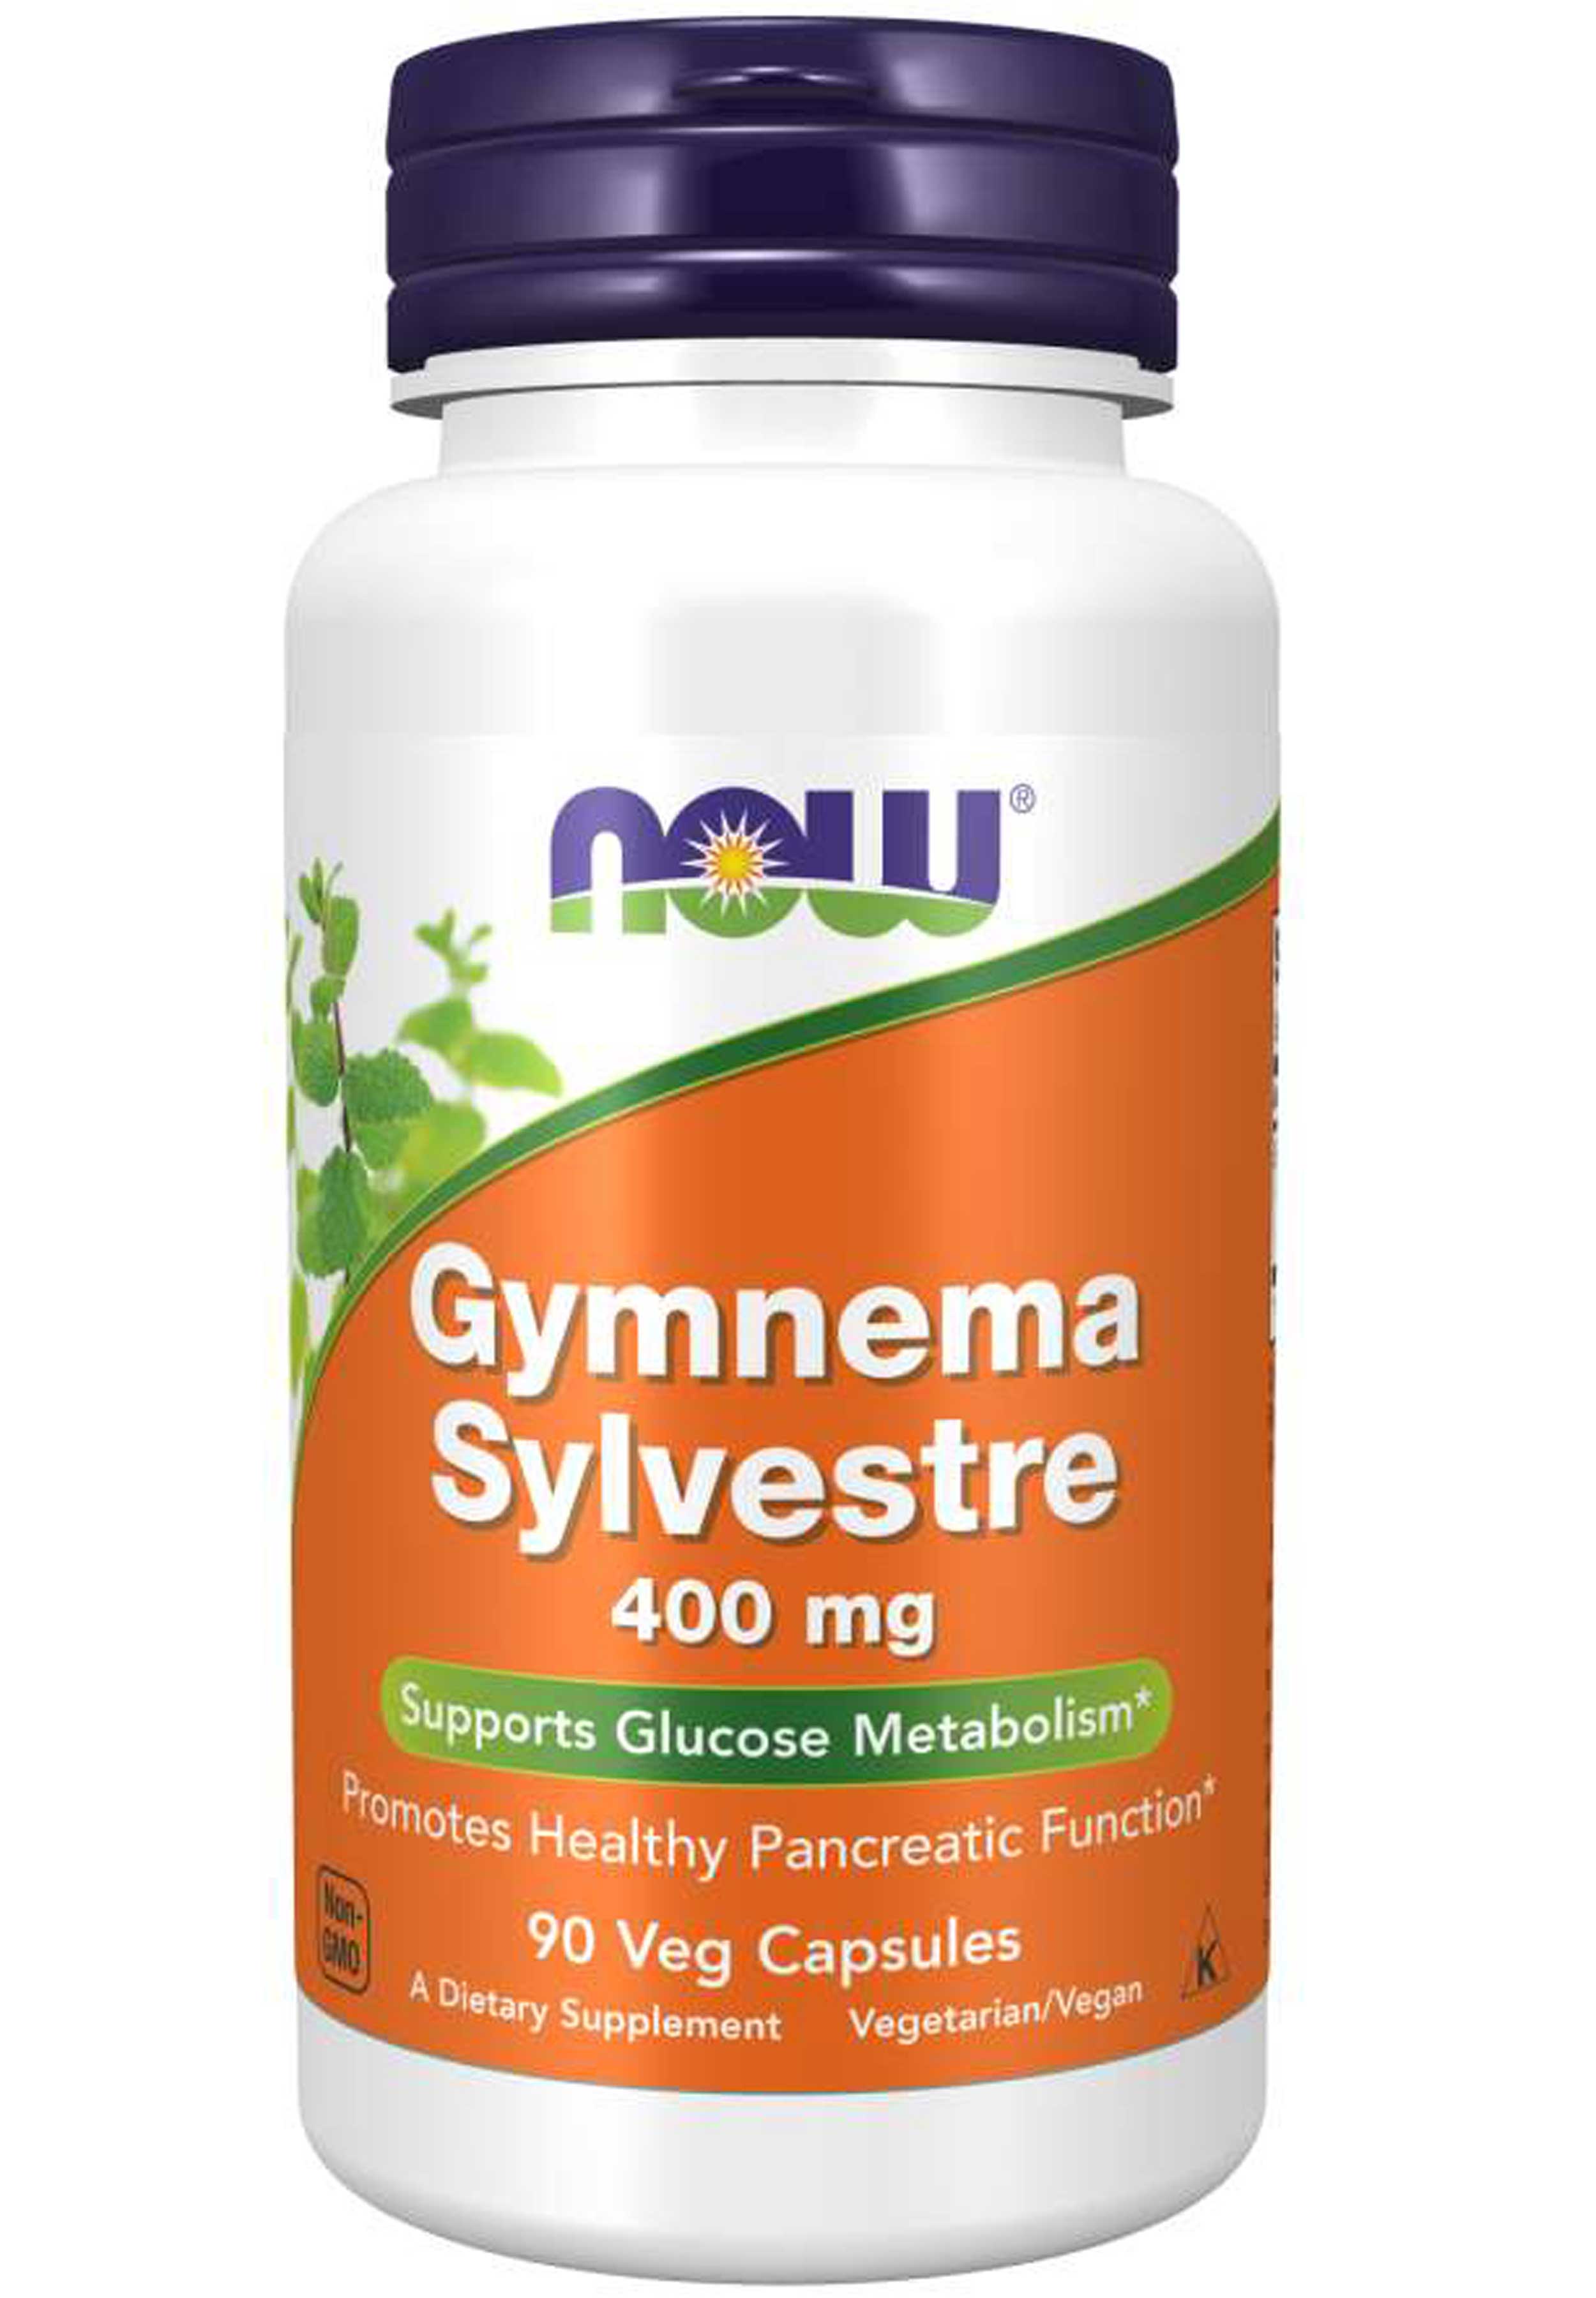 NOW Gymnema Sylvestre 400 mg